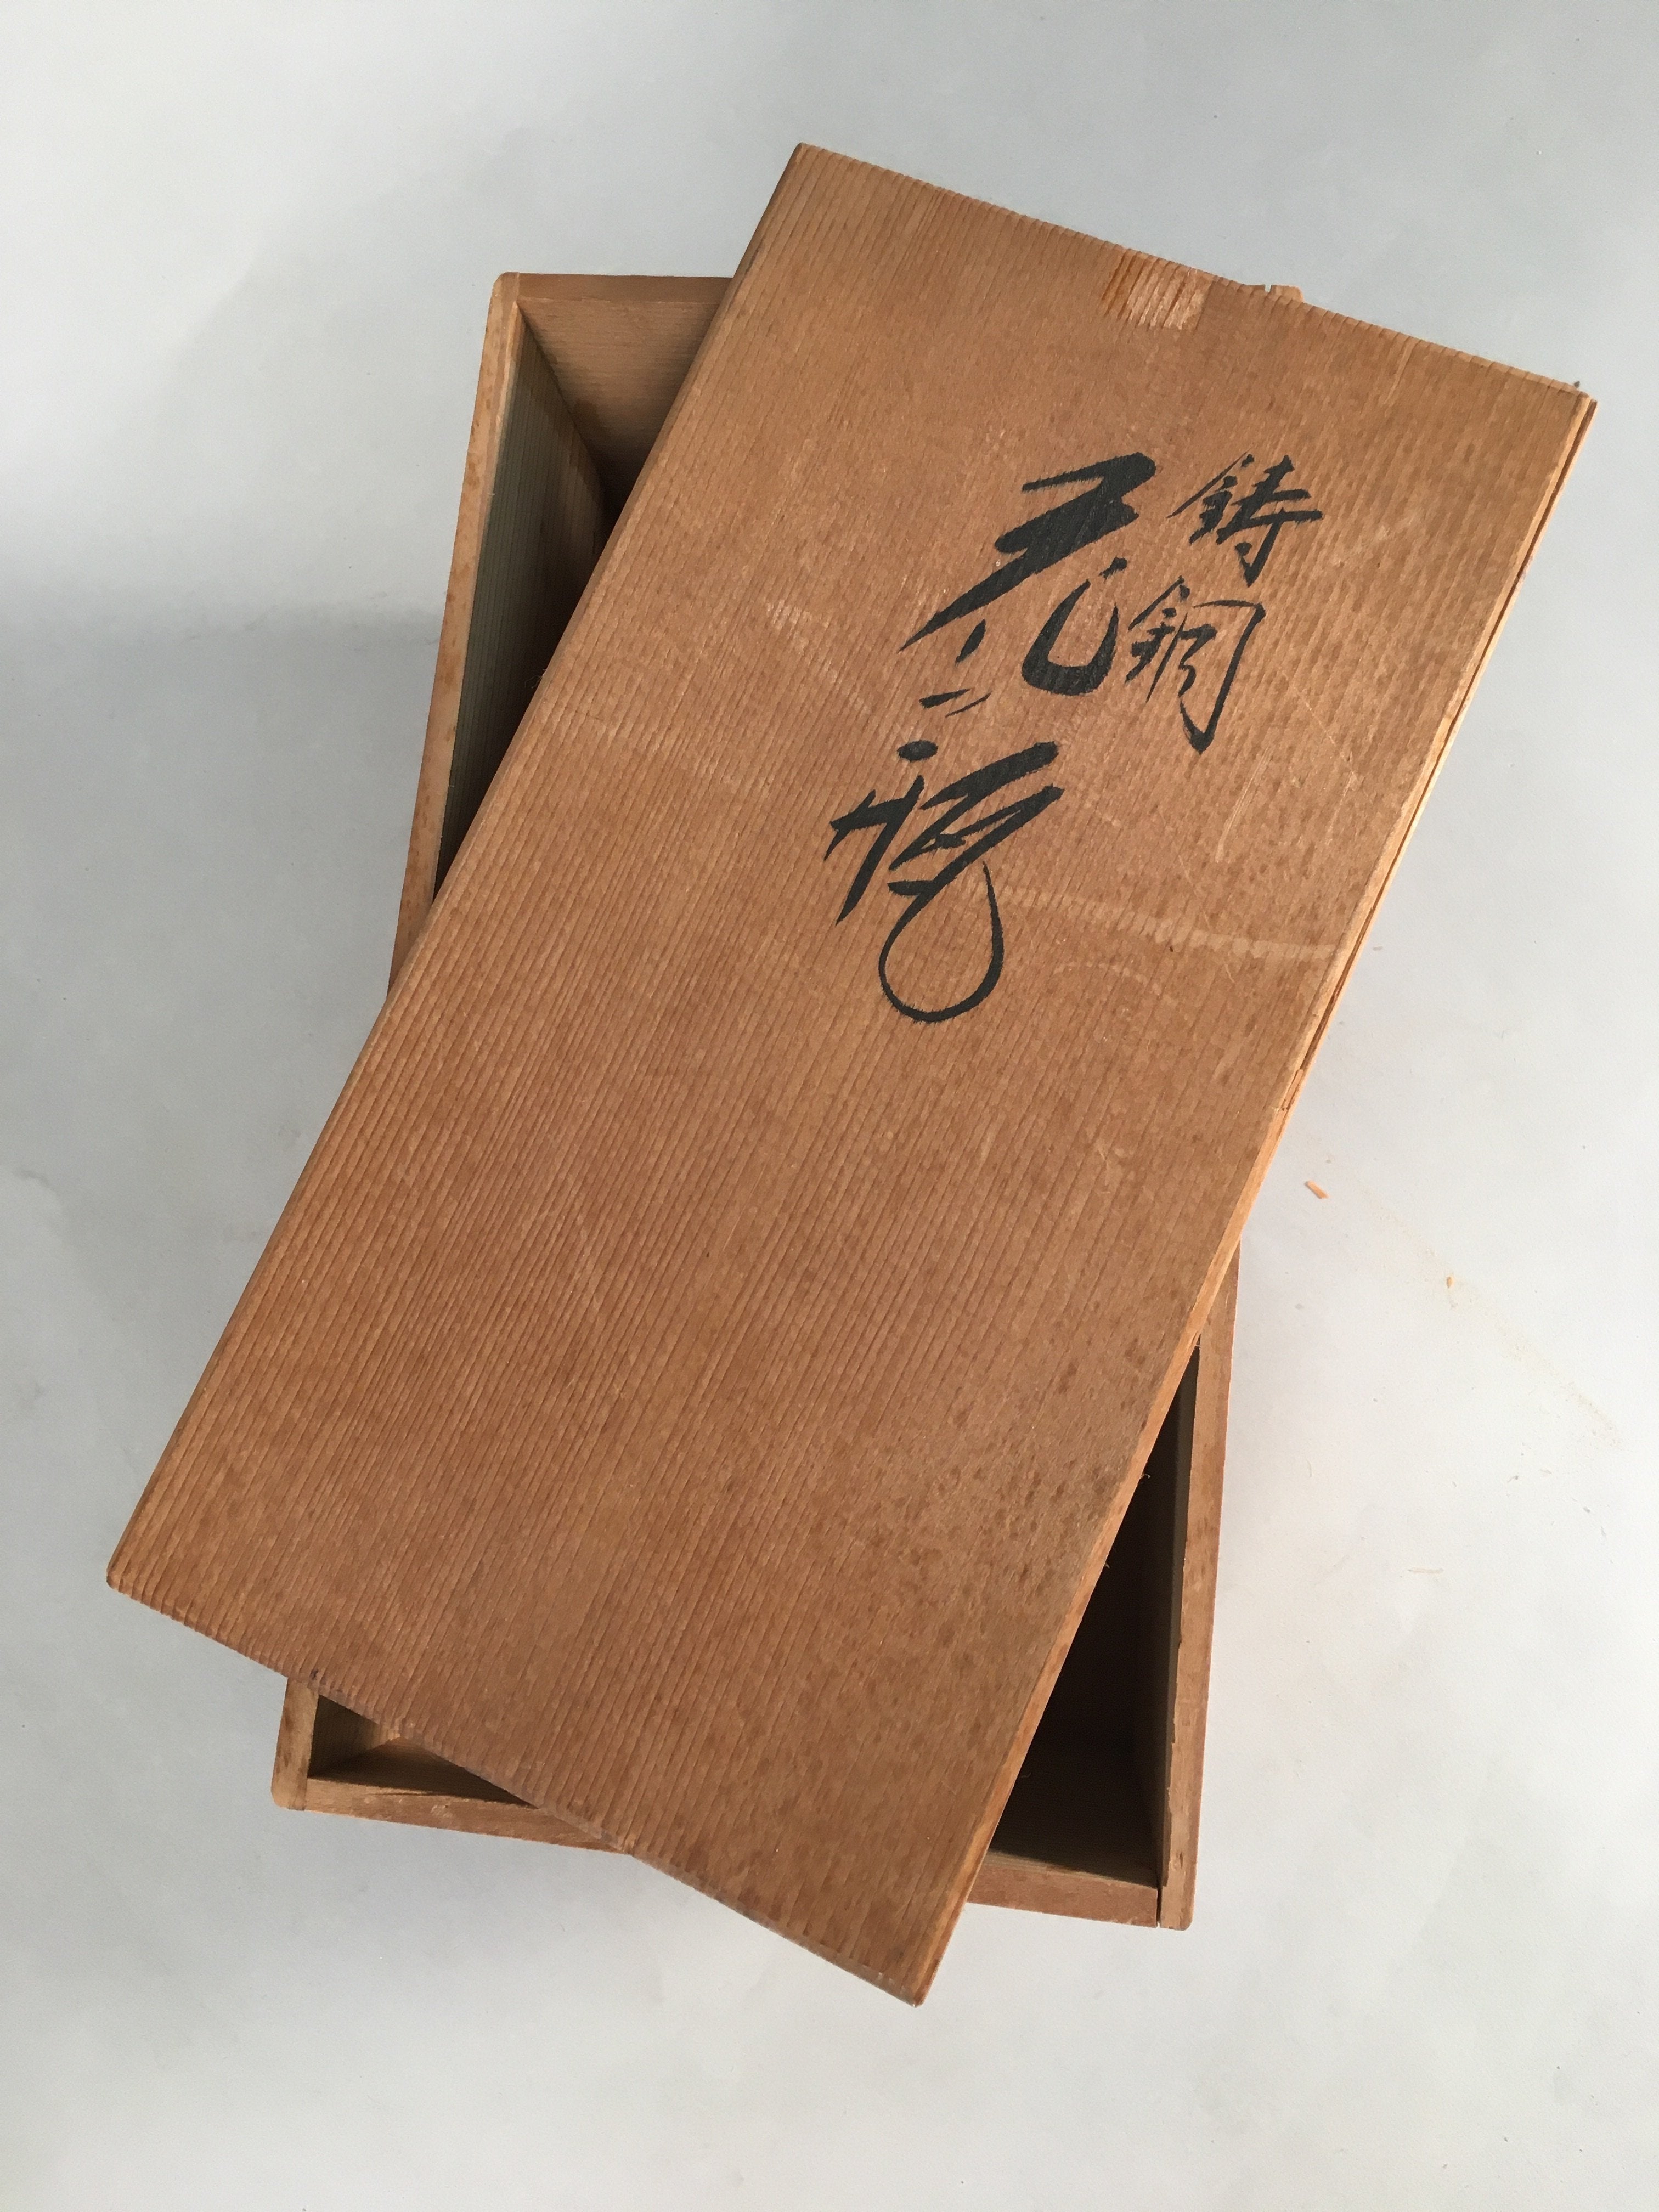 Japanese Wooden Storage Box Pottery Vtg Hako Inside 25.8x13.3x14cm WB756